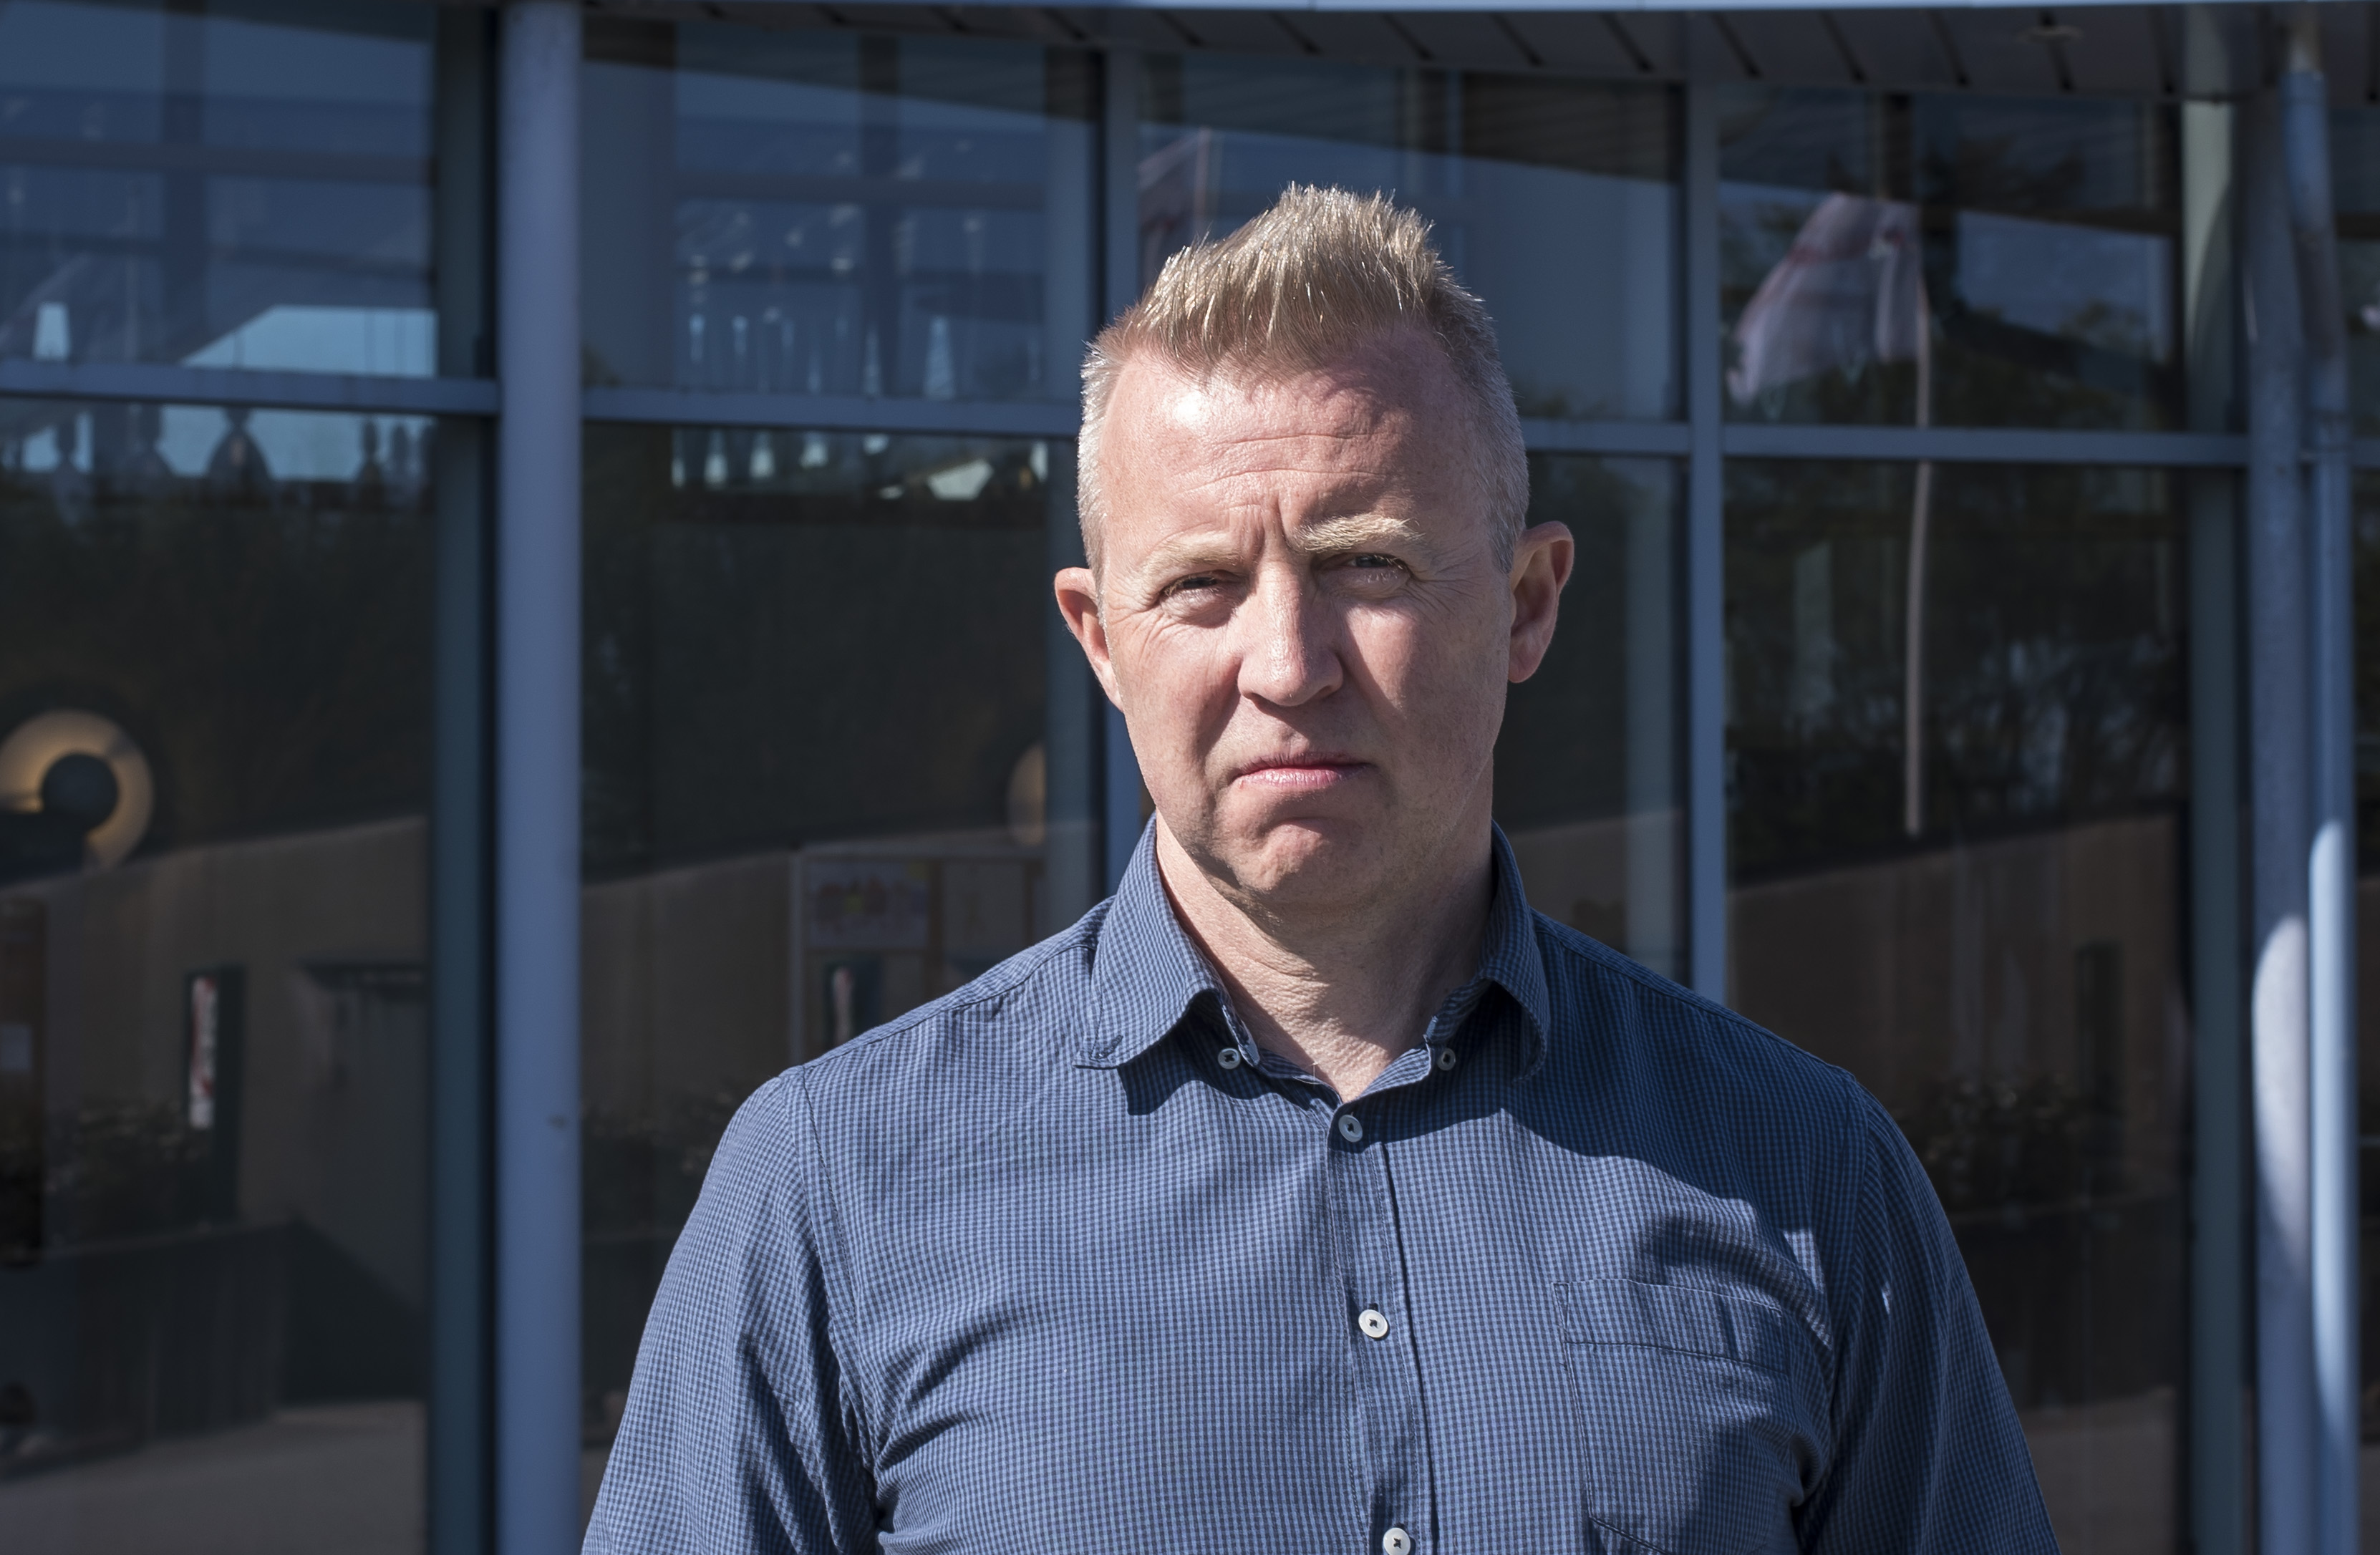 Forbundsleder Frode Alfheim vil ha politikerne på banen for å stoppe salget. Arkivfoto: Atle Espen Helgesen.